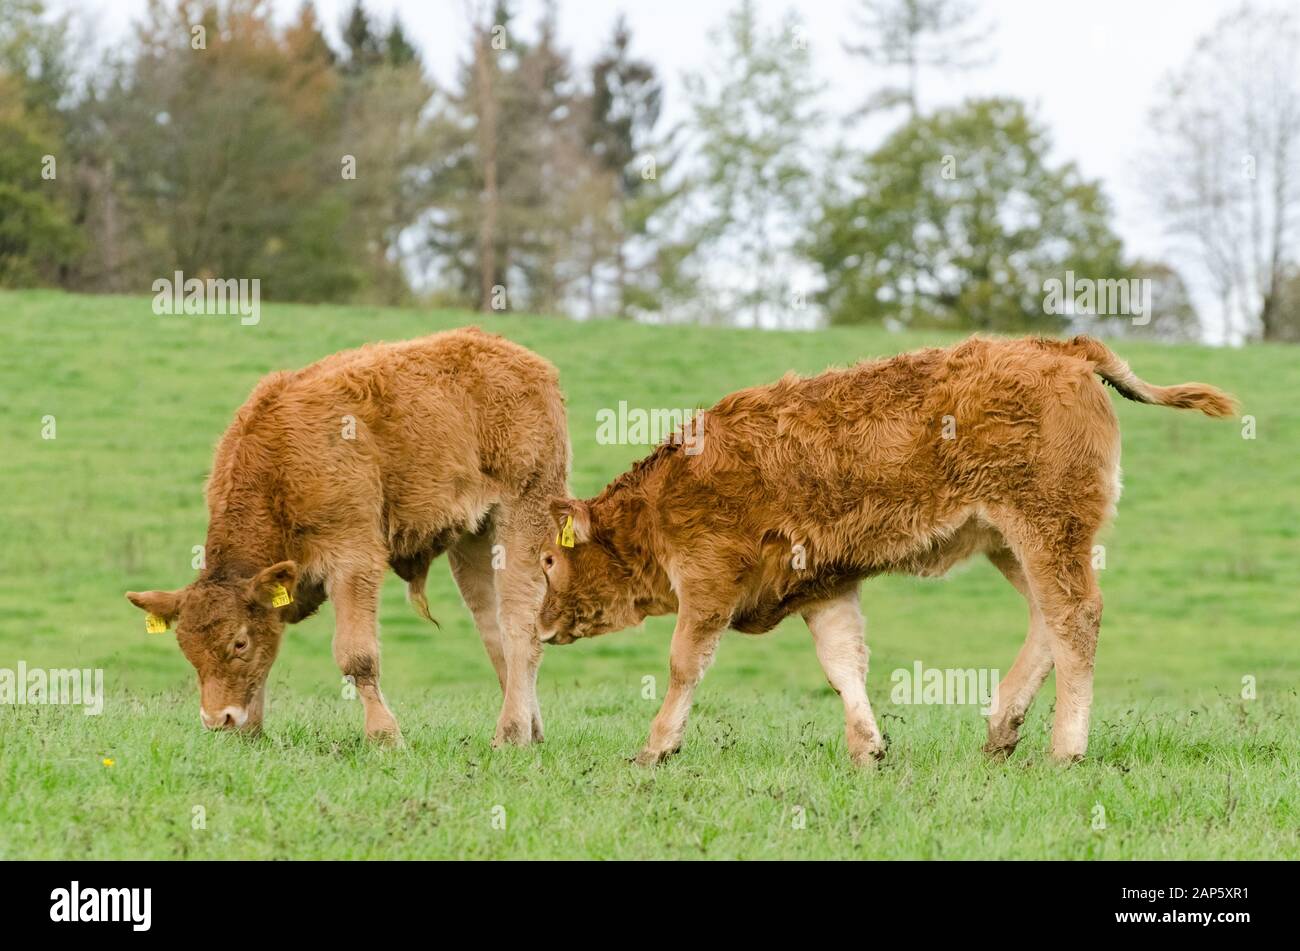 L'élevage de bovins domestiques, Bos taurus, près d'une ferme de bétail sur un pâturage en Allemagne, Europe de l'Ouest Banque D'Images